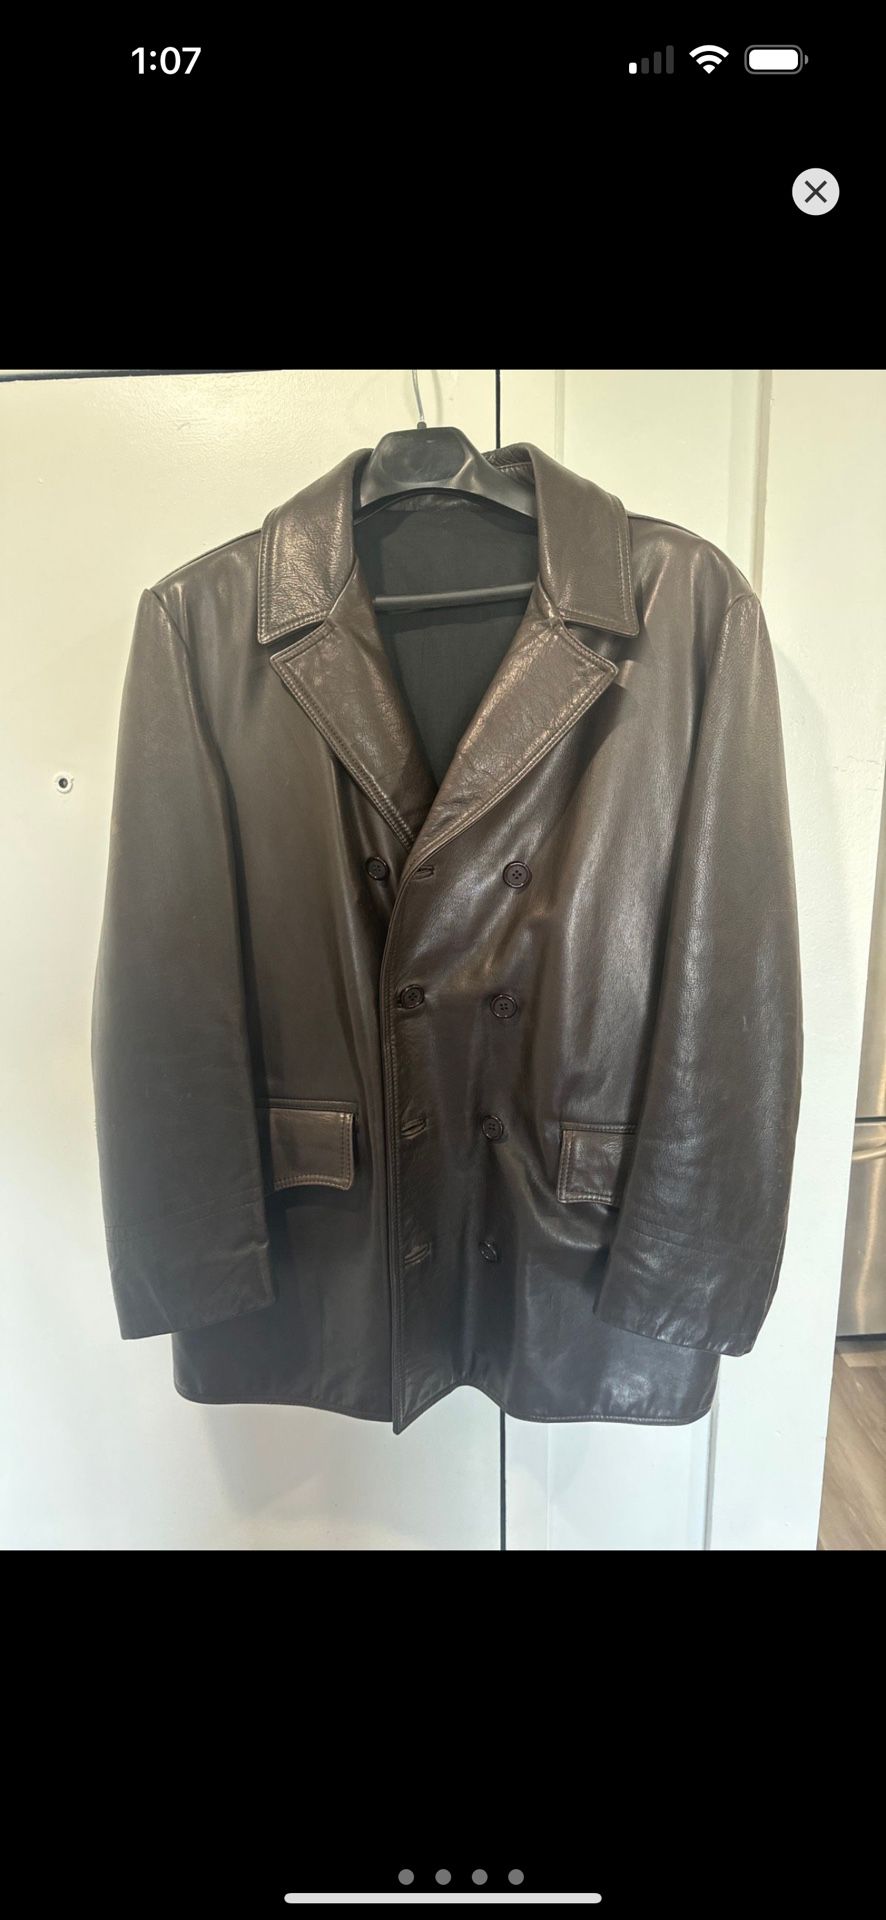 Arizona Leather Jacket